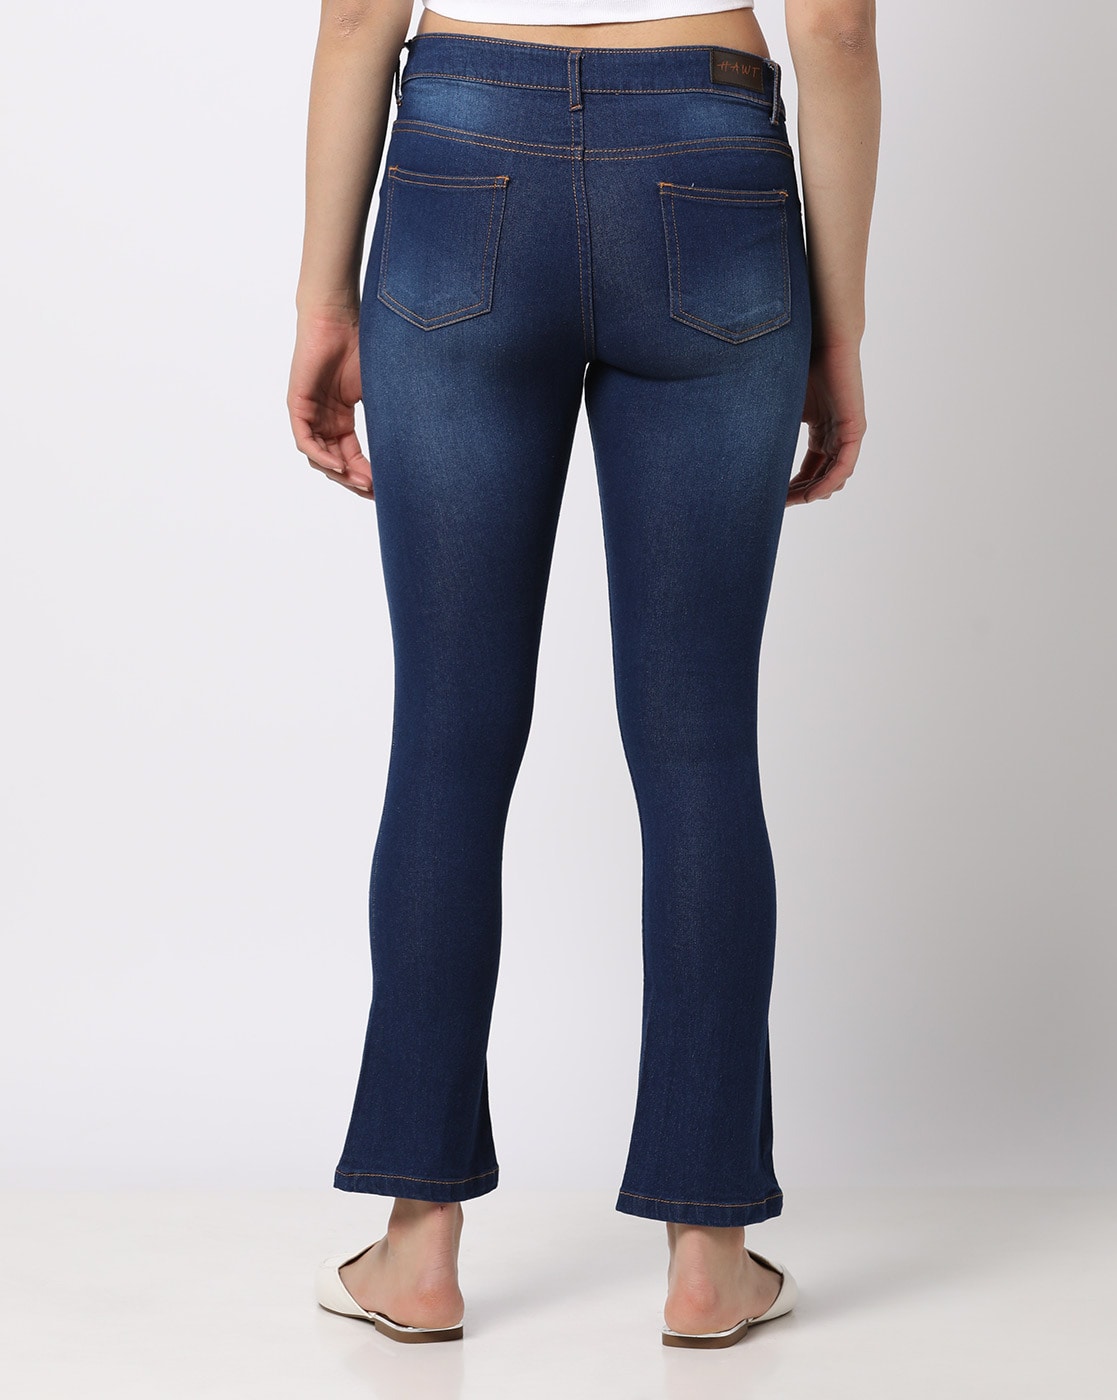 Buy Blue Jeans & Jeggings for Women by HAWT Online